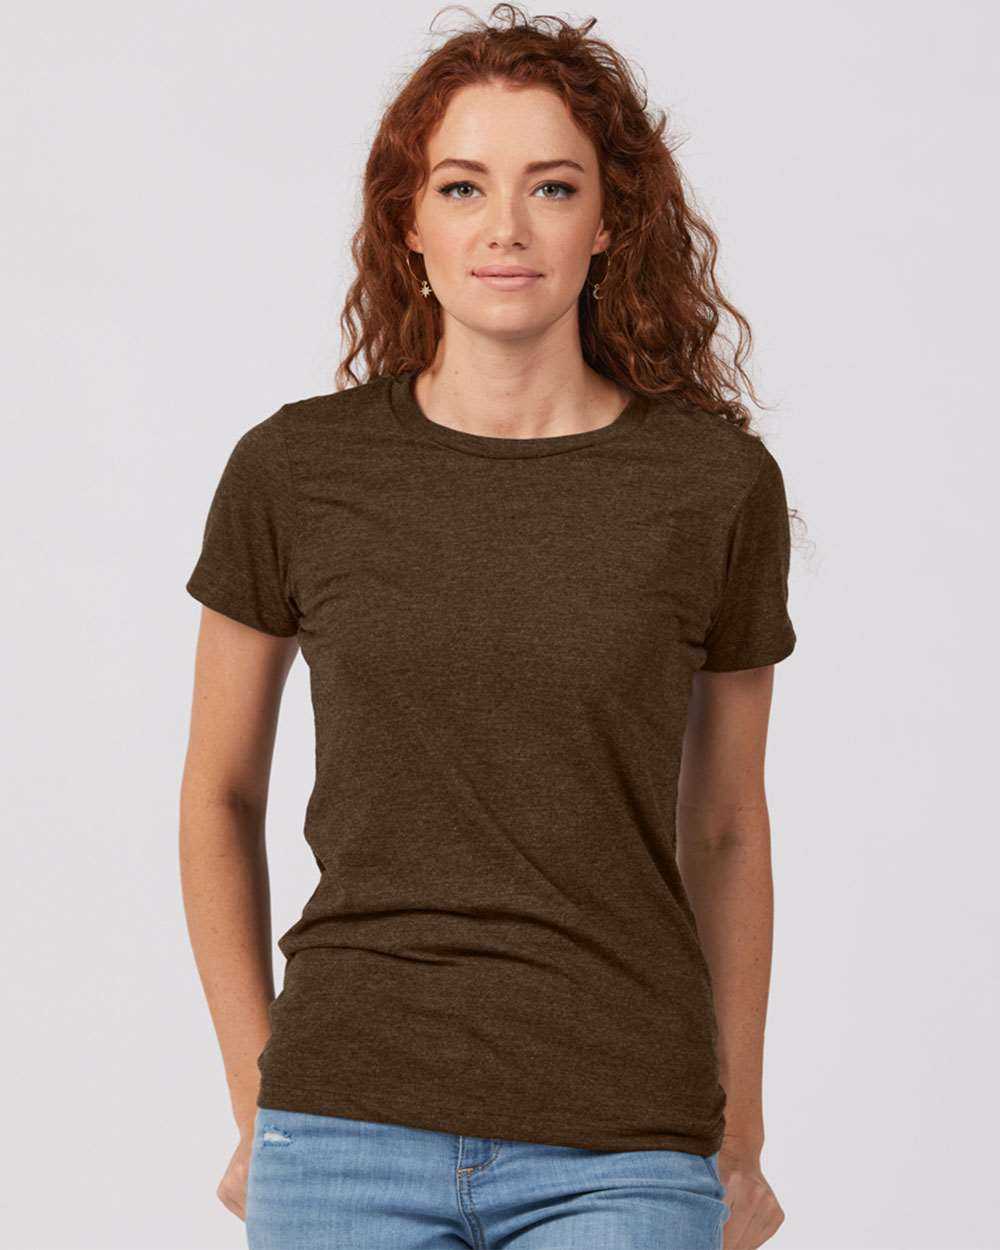 Tultex 542 Women&#39;s Premium Cotton Blend T-Shirt - Brown Heather - HIT a Double